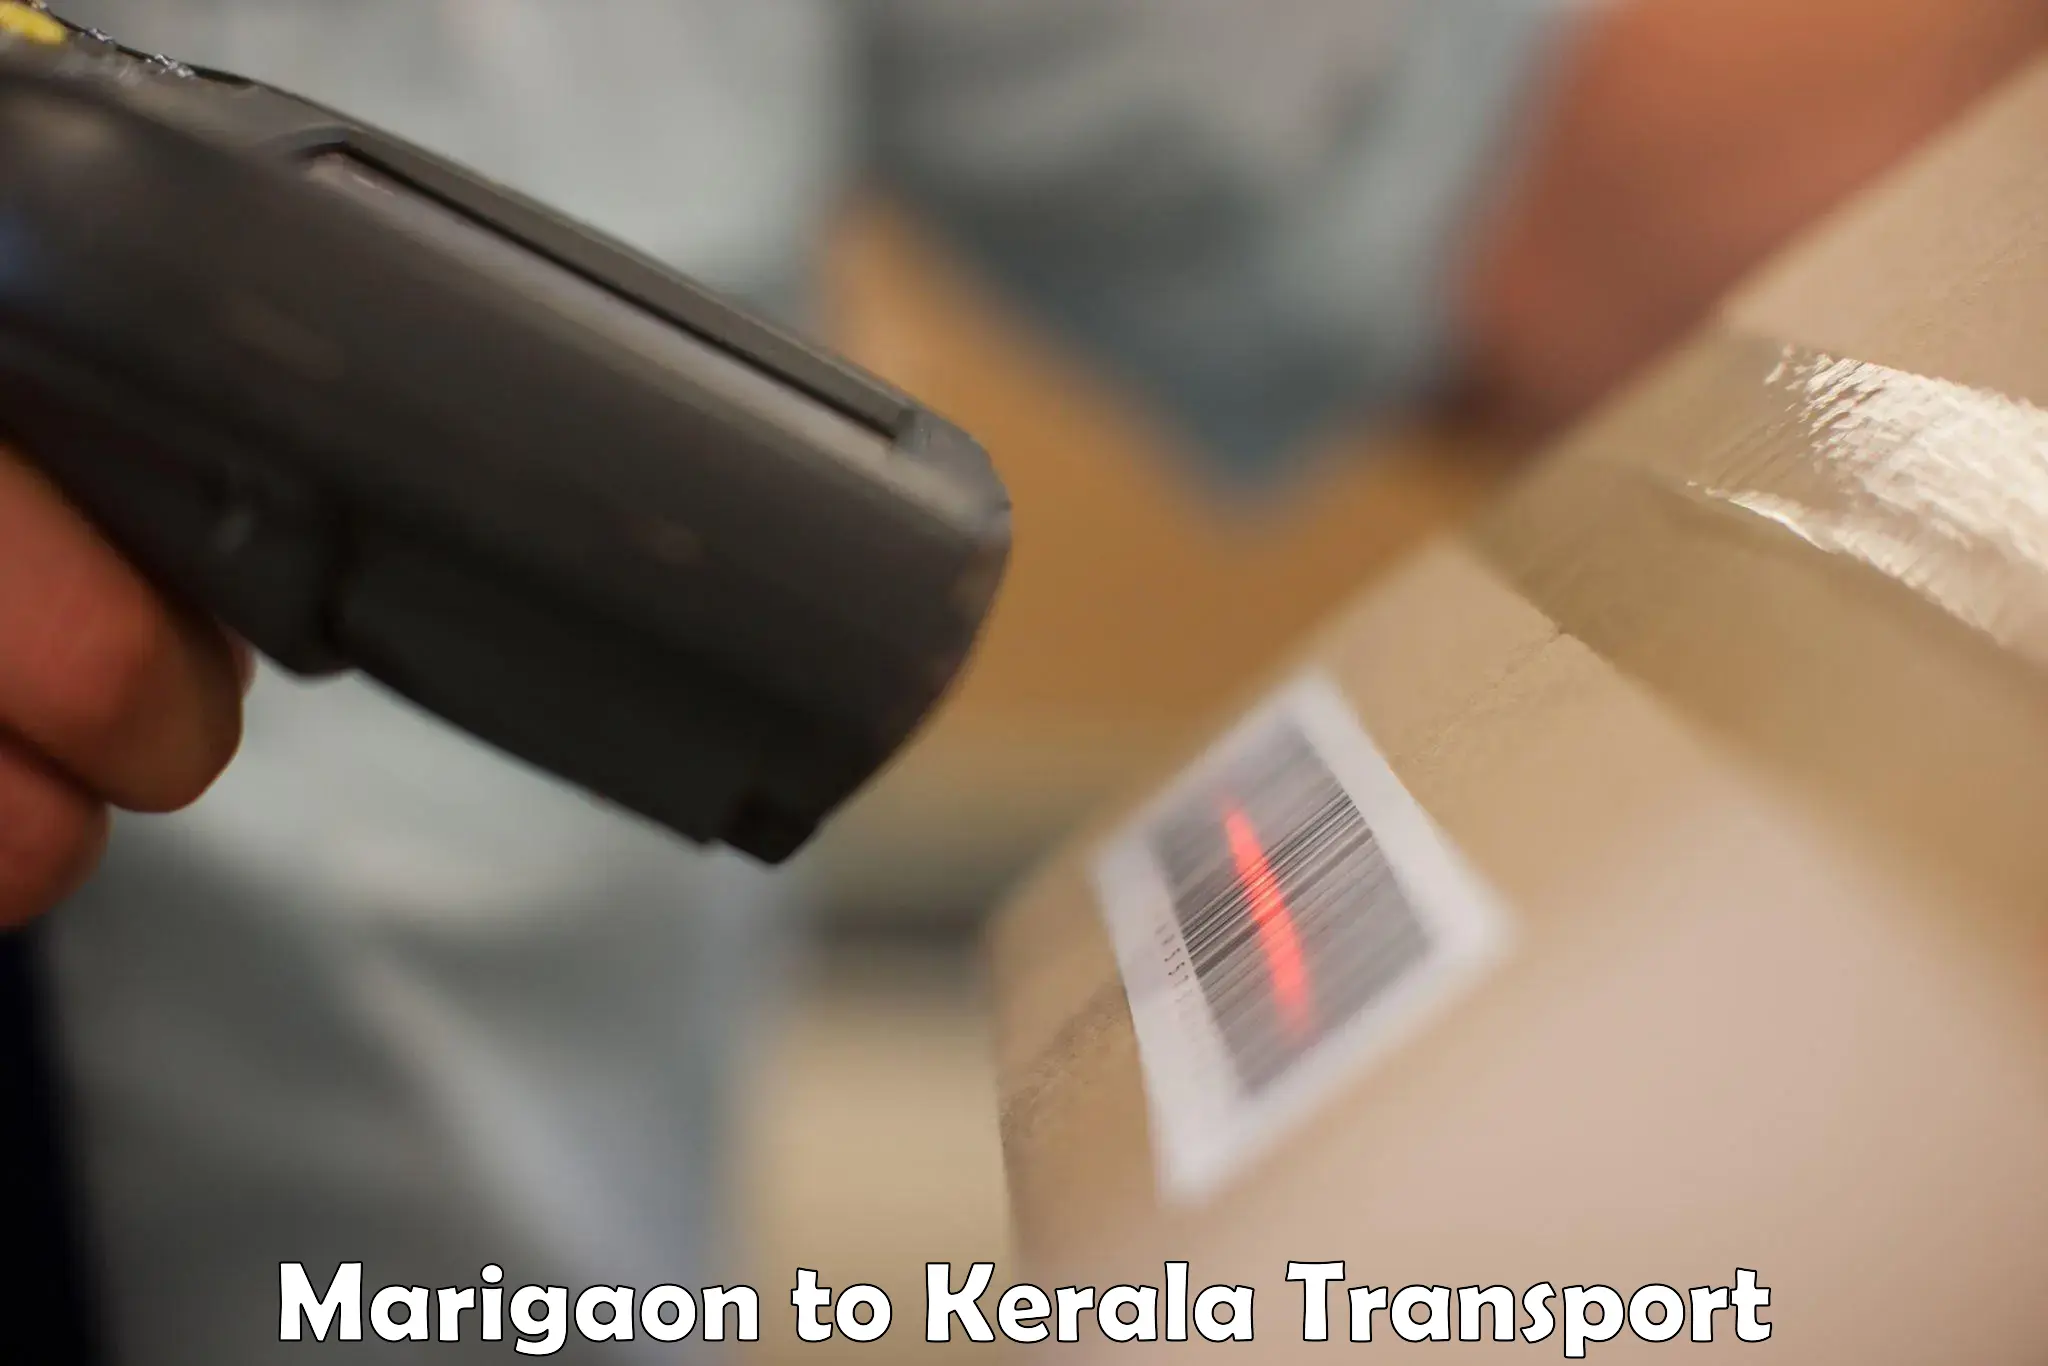 Transport shared services Marigaon to Thiruvananthapuram